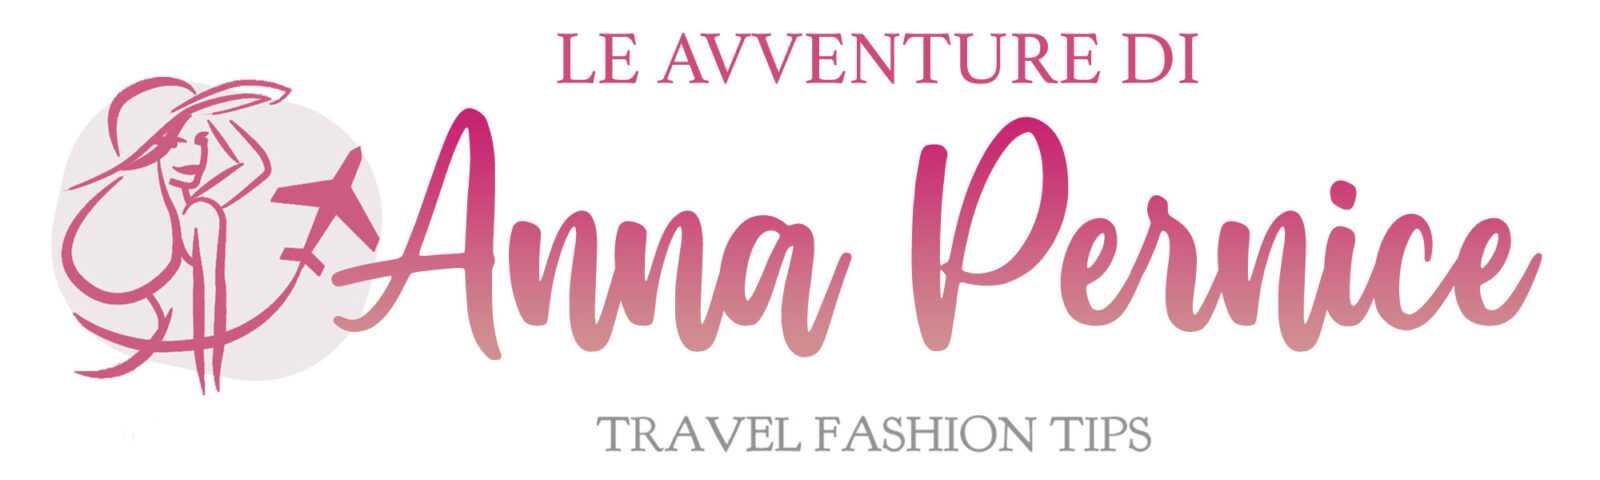 Le avventure di Anna Pernice – Travel Fashion Tips